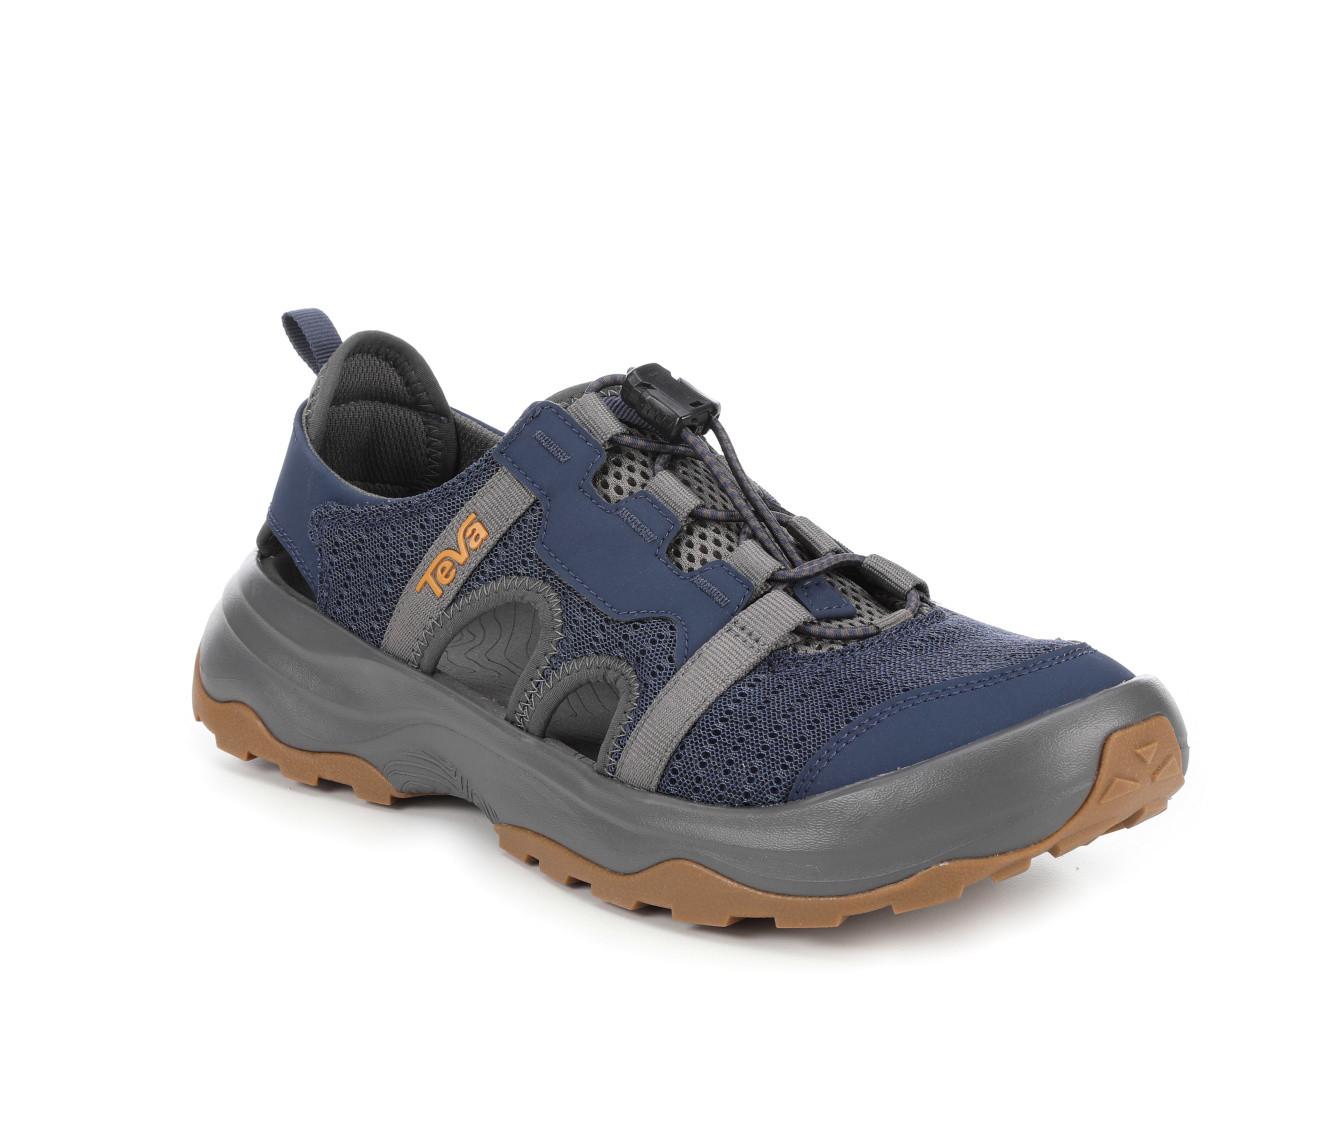 Men's Teva Outflow CT Outdoor Sandals